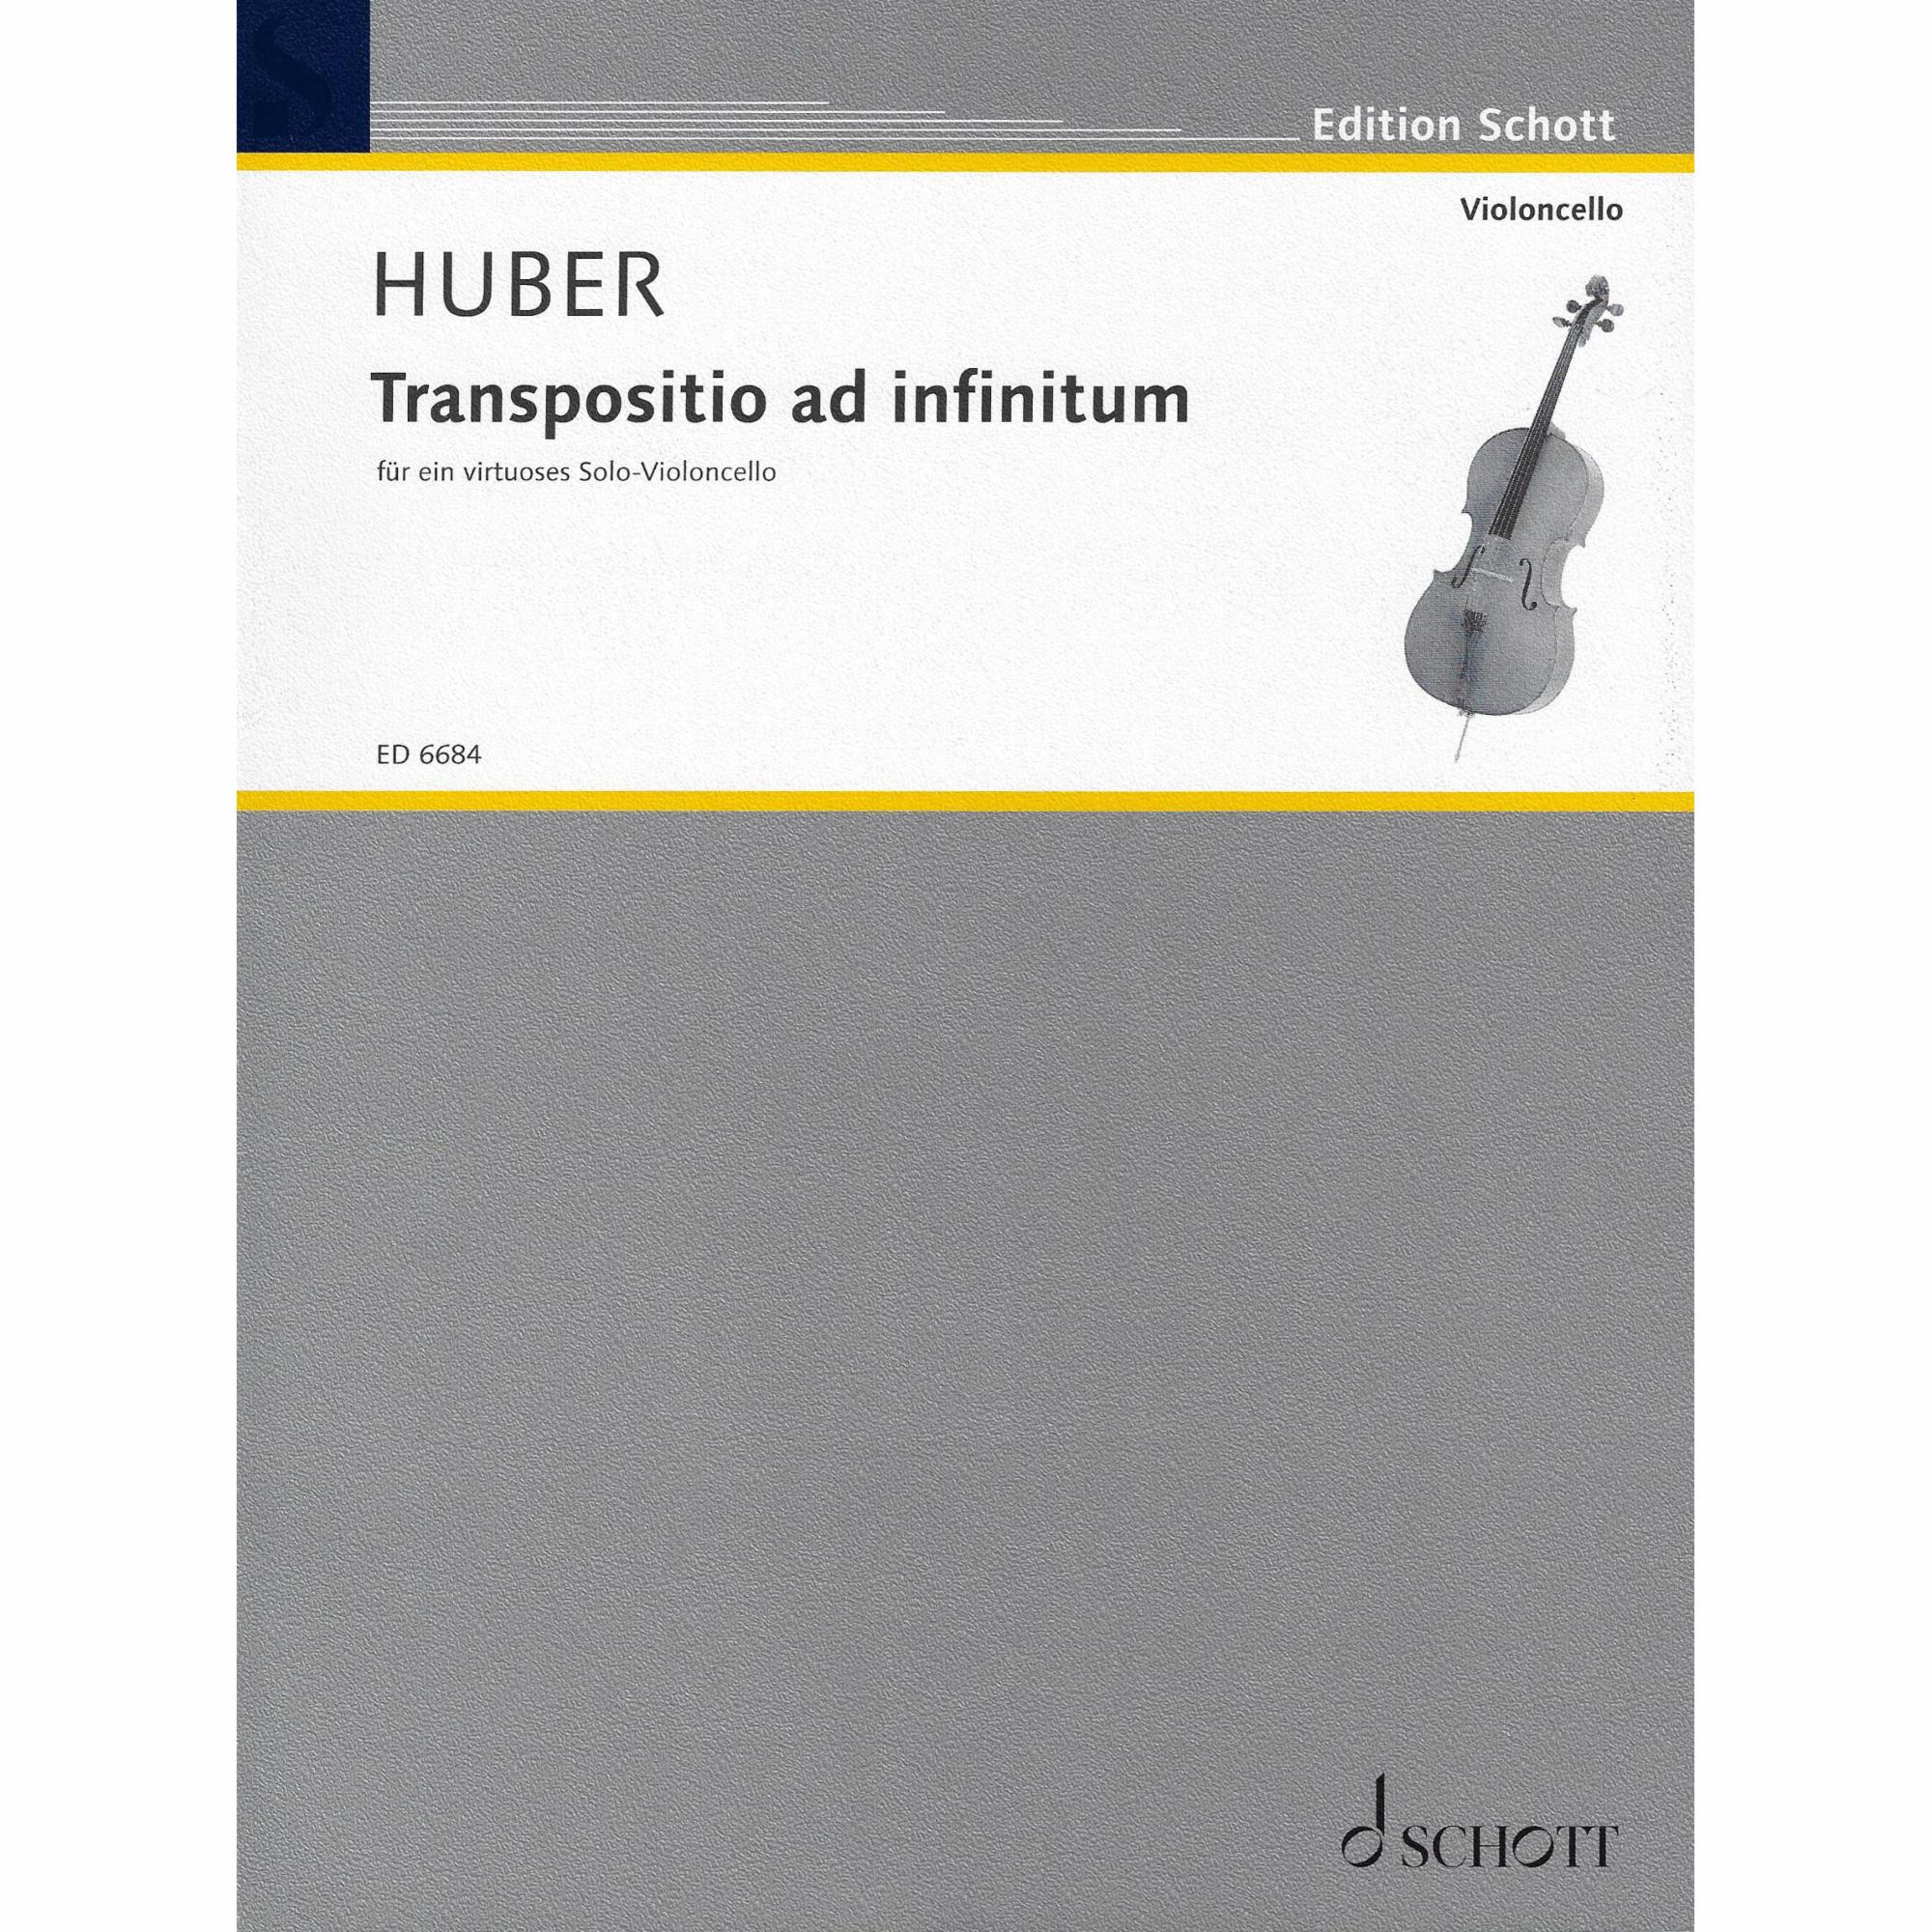 Huber -- Transpositio ad infinitum for Solo Cello